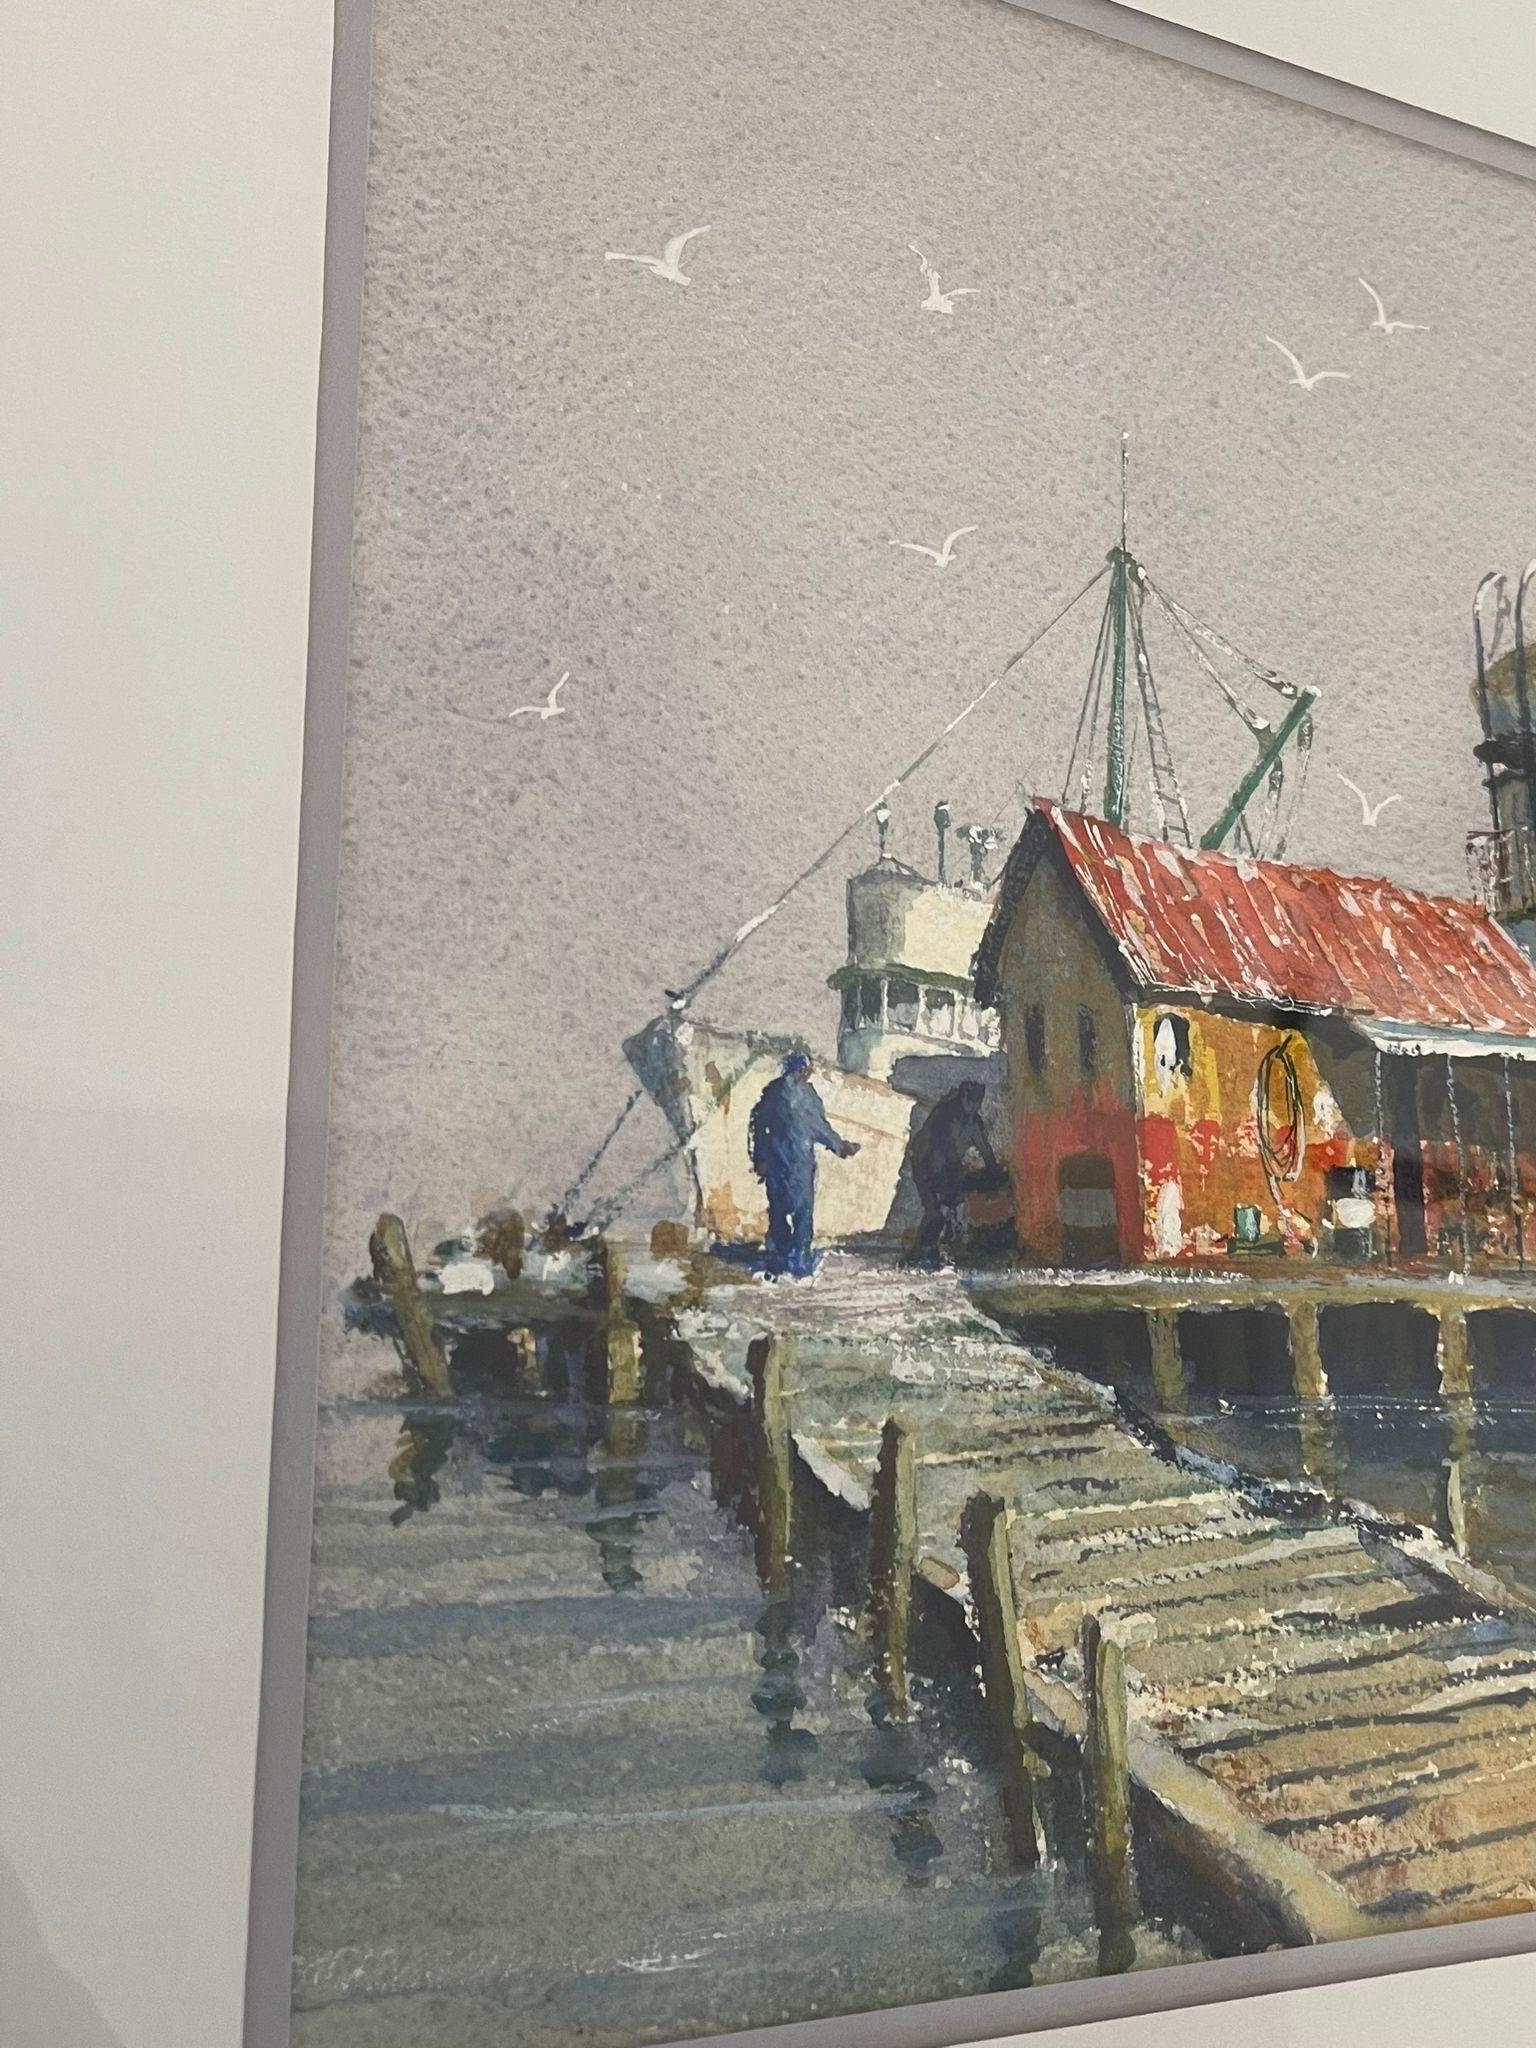 Argent Aquarelle originale encadrée intitulée Ferry for Sale par Coe en vente